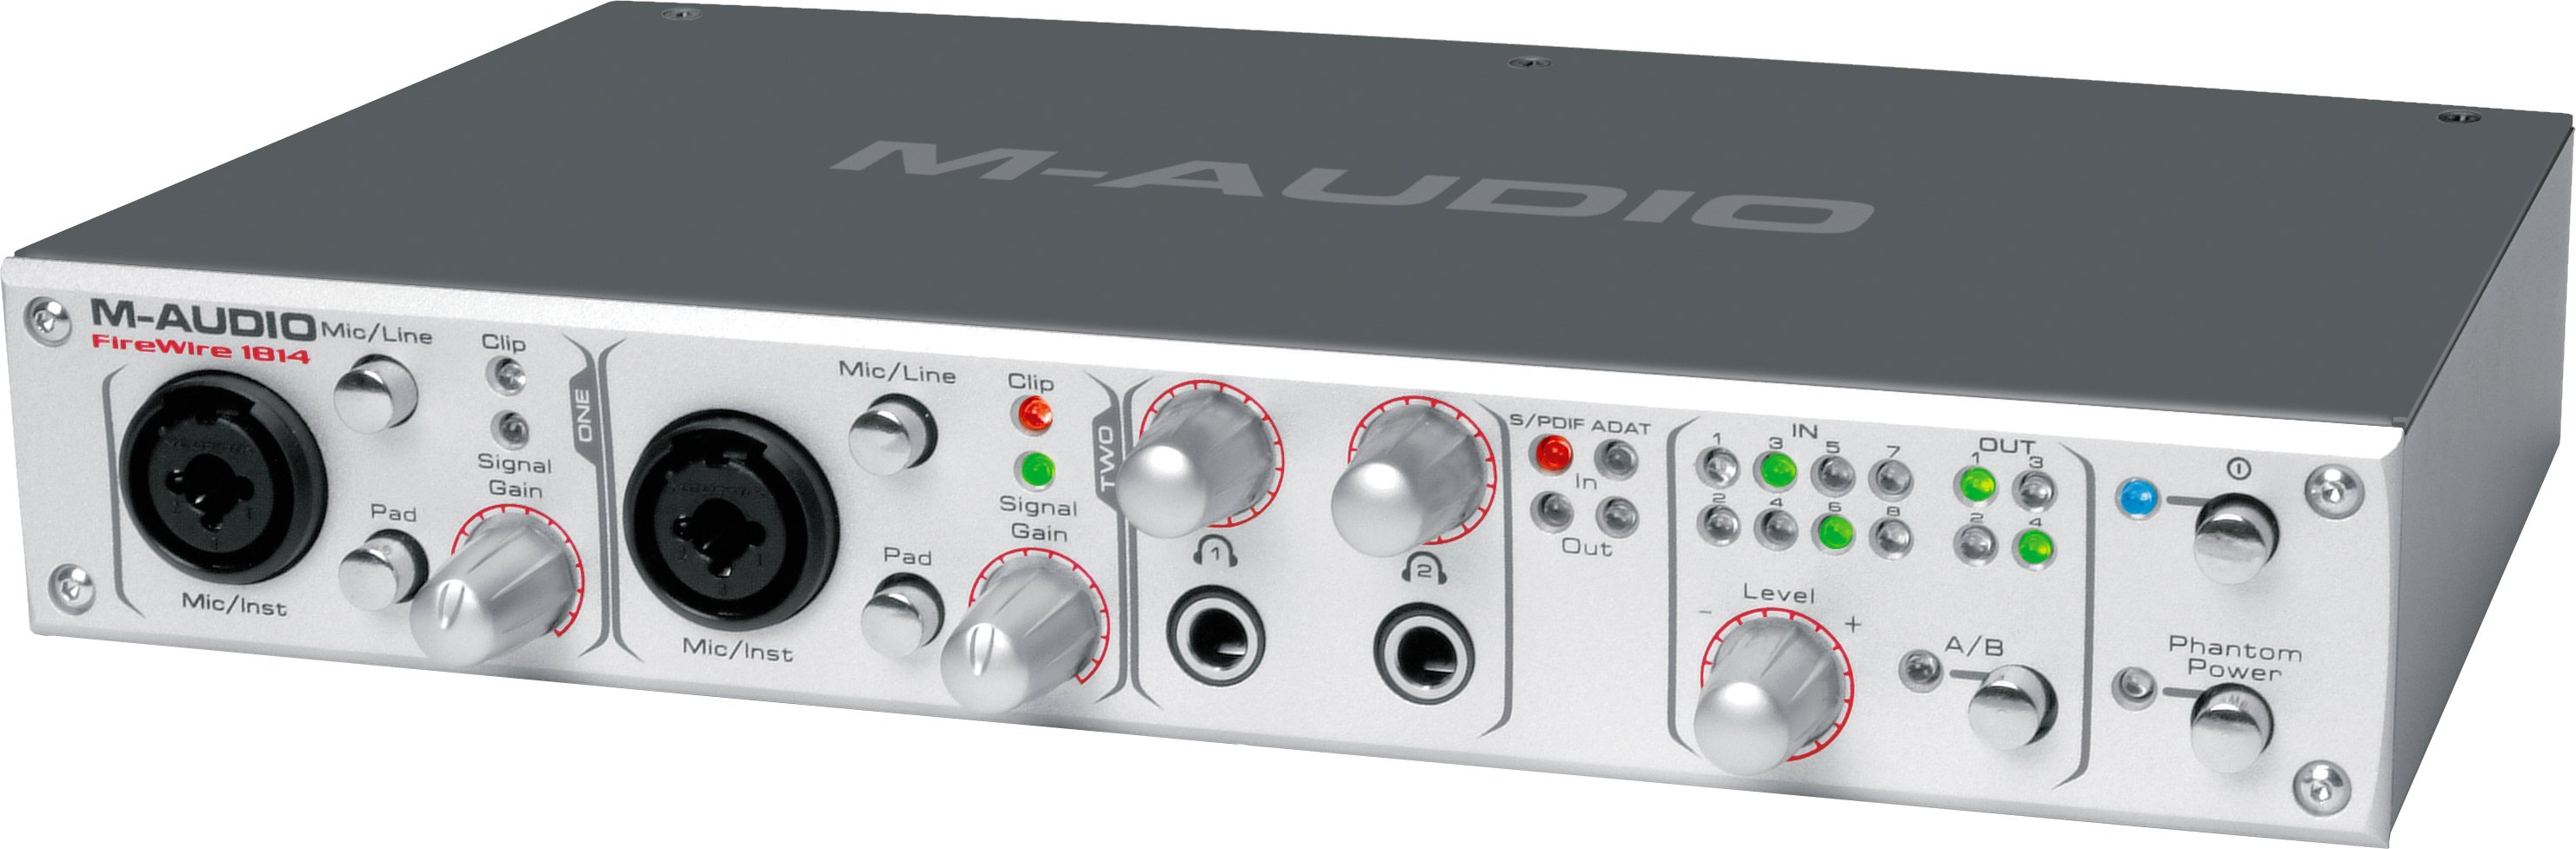 M audio firewire 410 driver mac os x 10.11